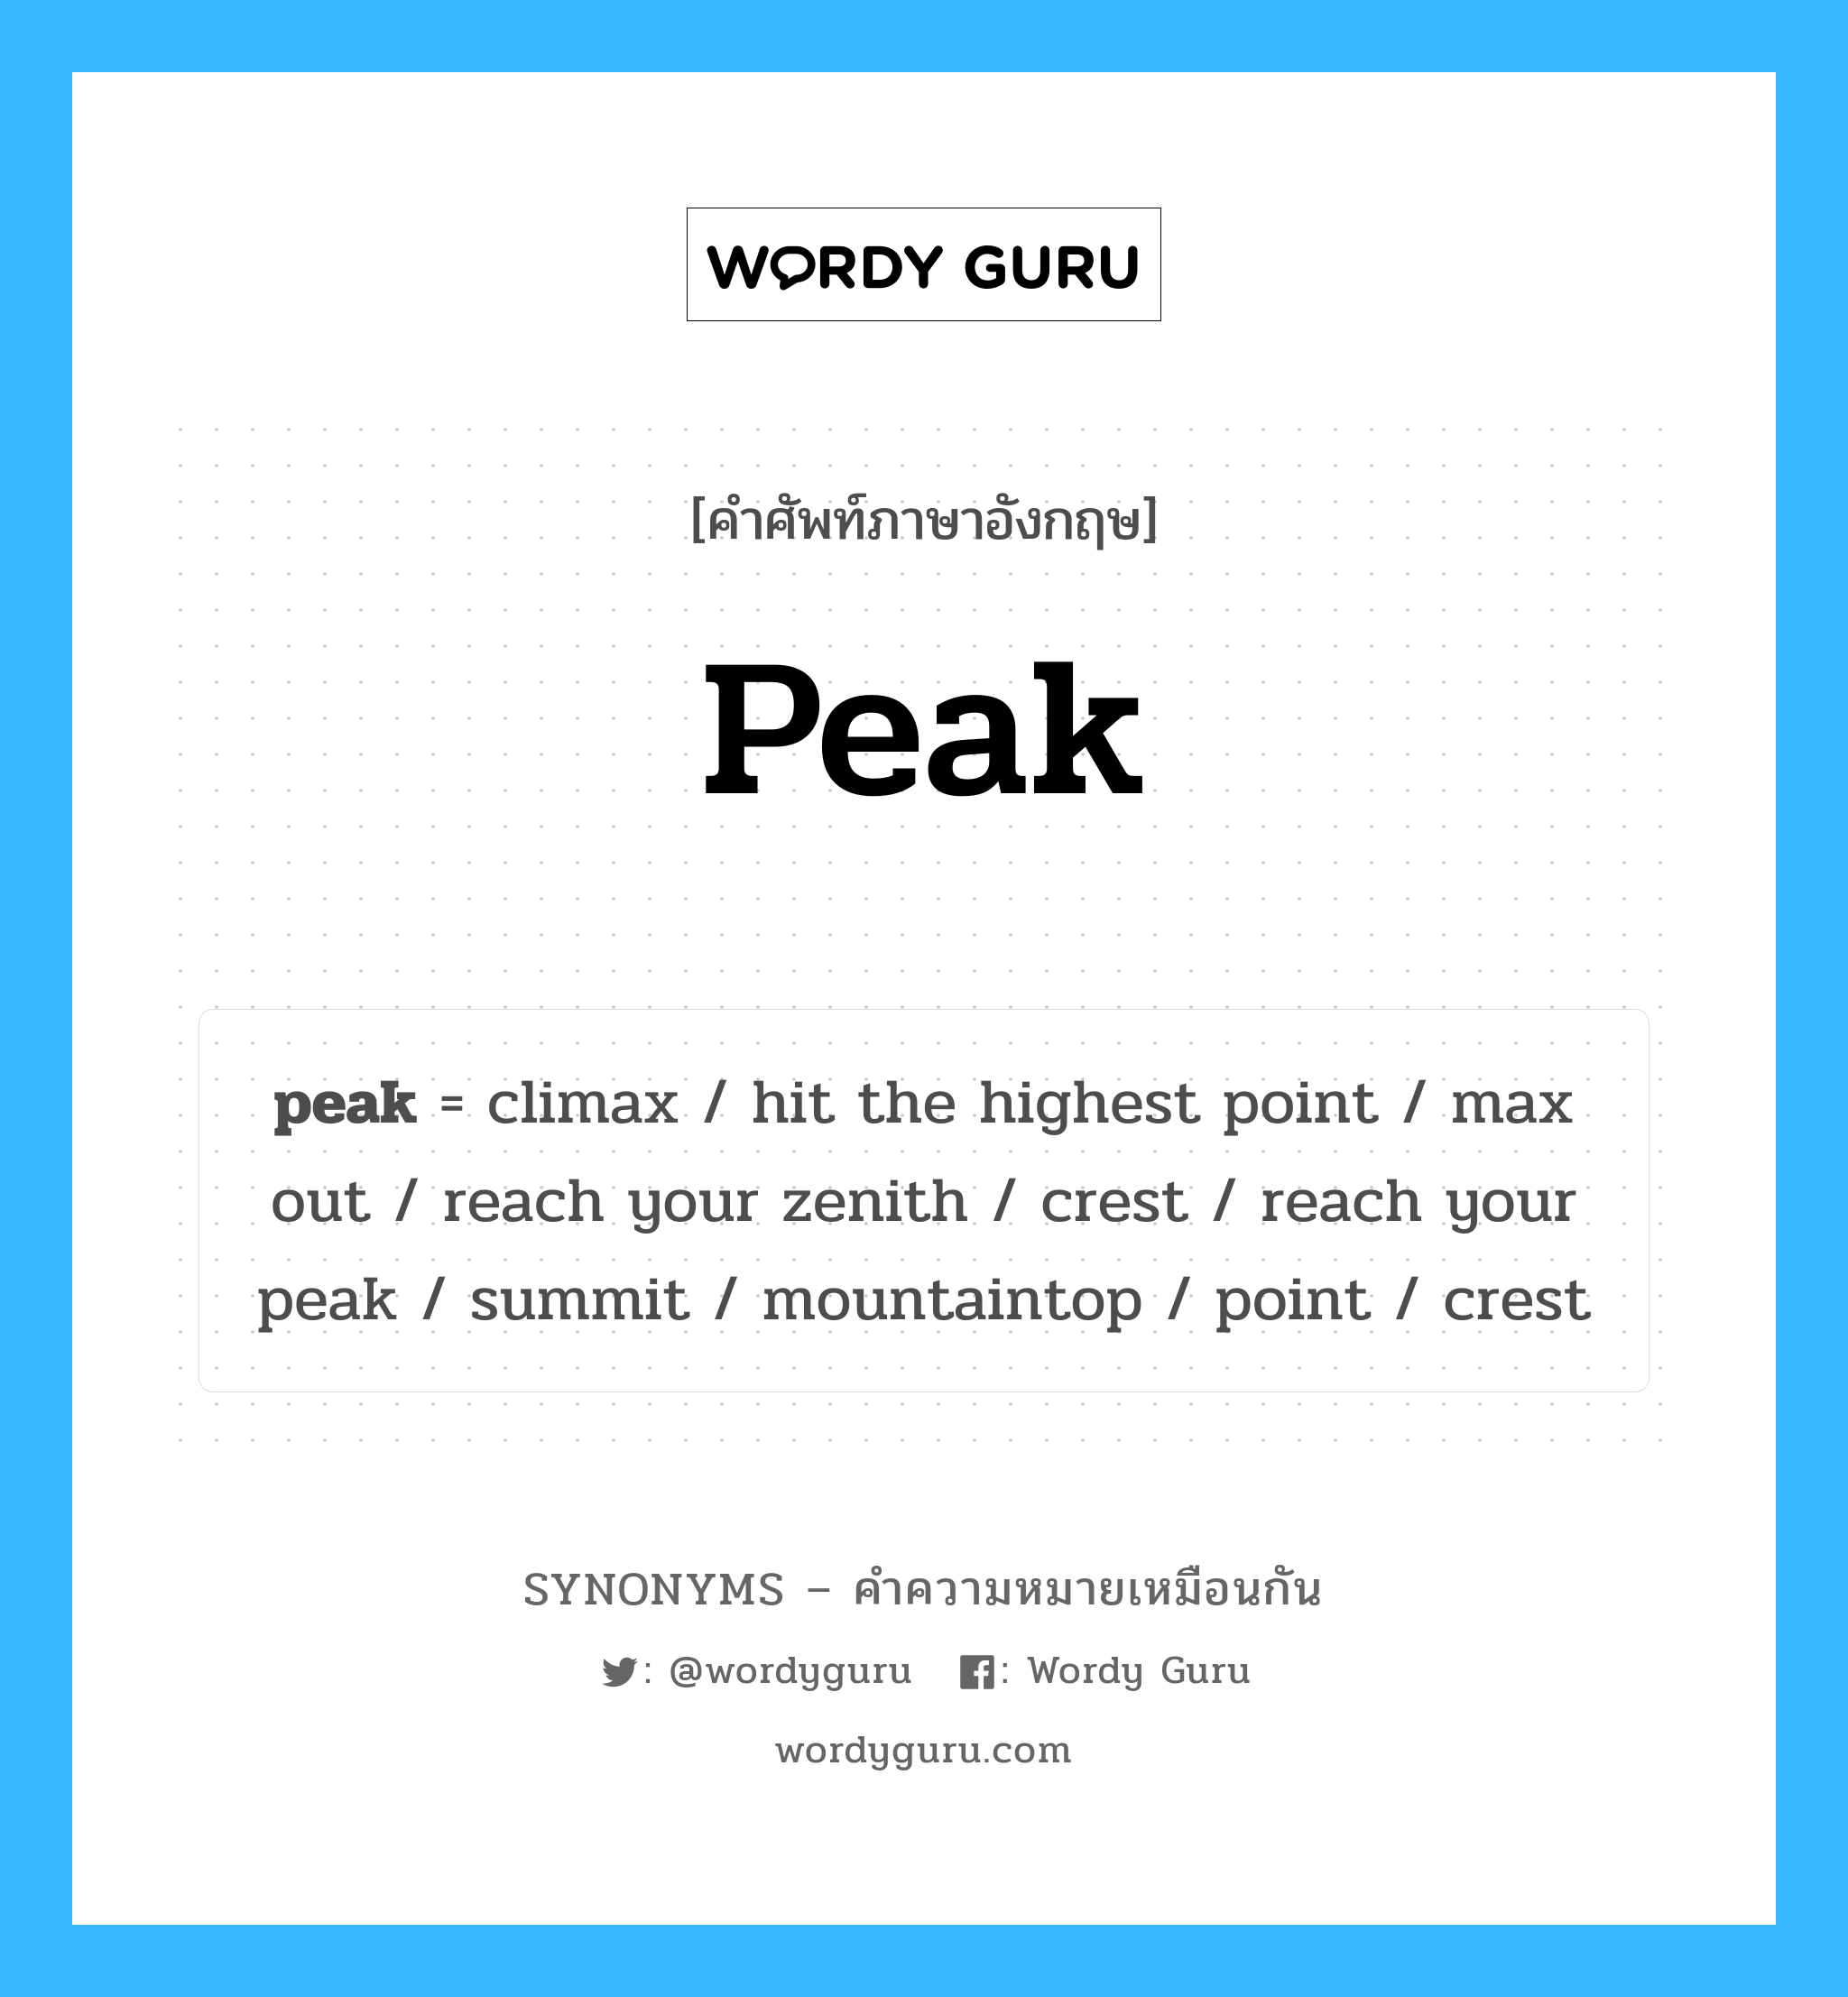 point เป็นหนึ่งใน peak และมีคำอื่น ๆ อีกดังนี้, คำศัพท์ภาษาอังกฤษ point ความหมายคล้ายกันกับ peak แปลว่า จุด หมวด peak